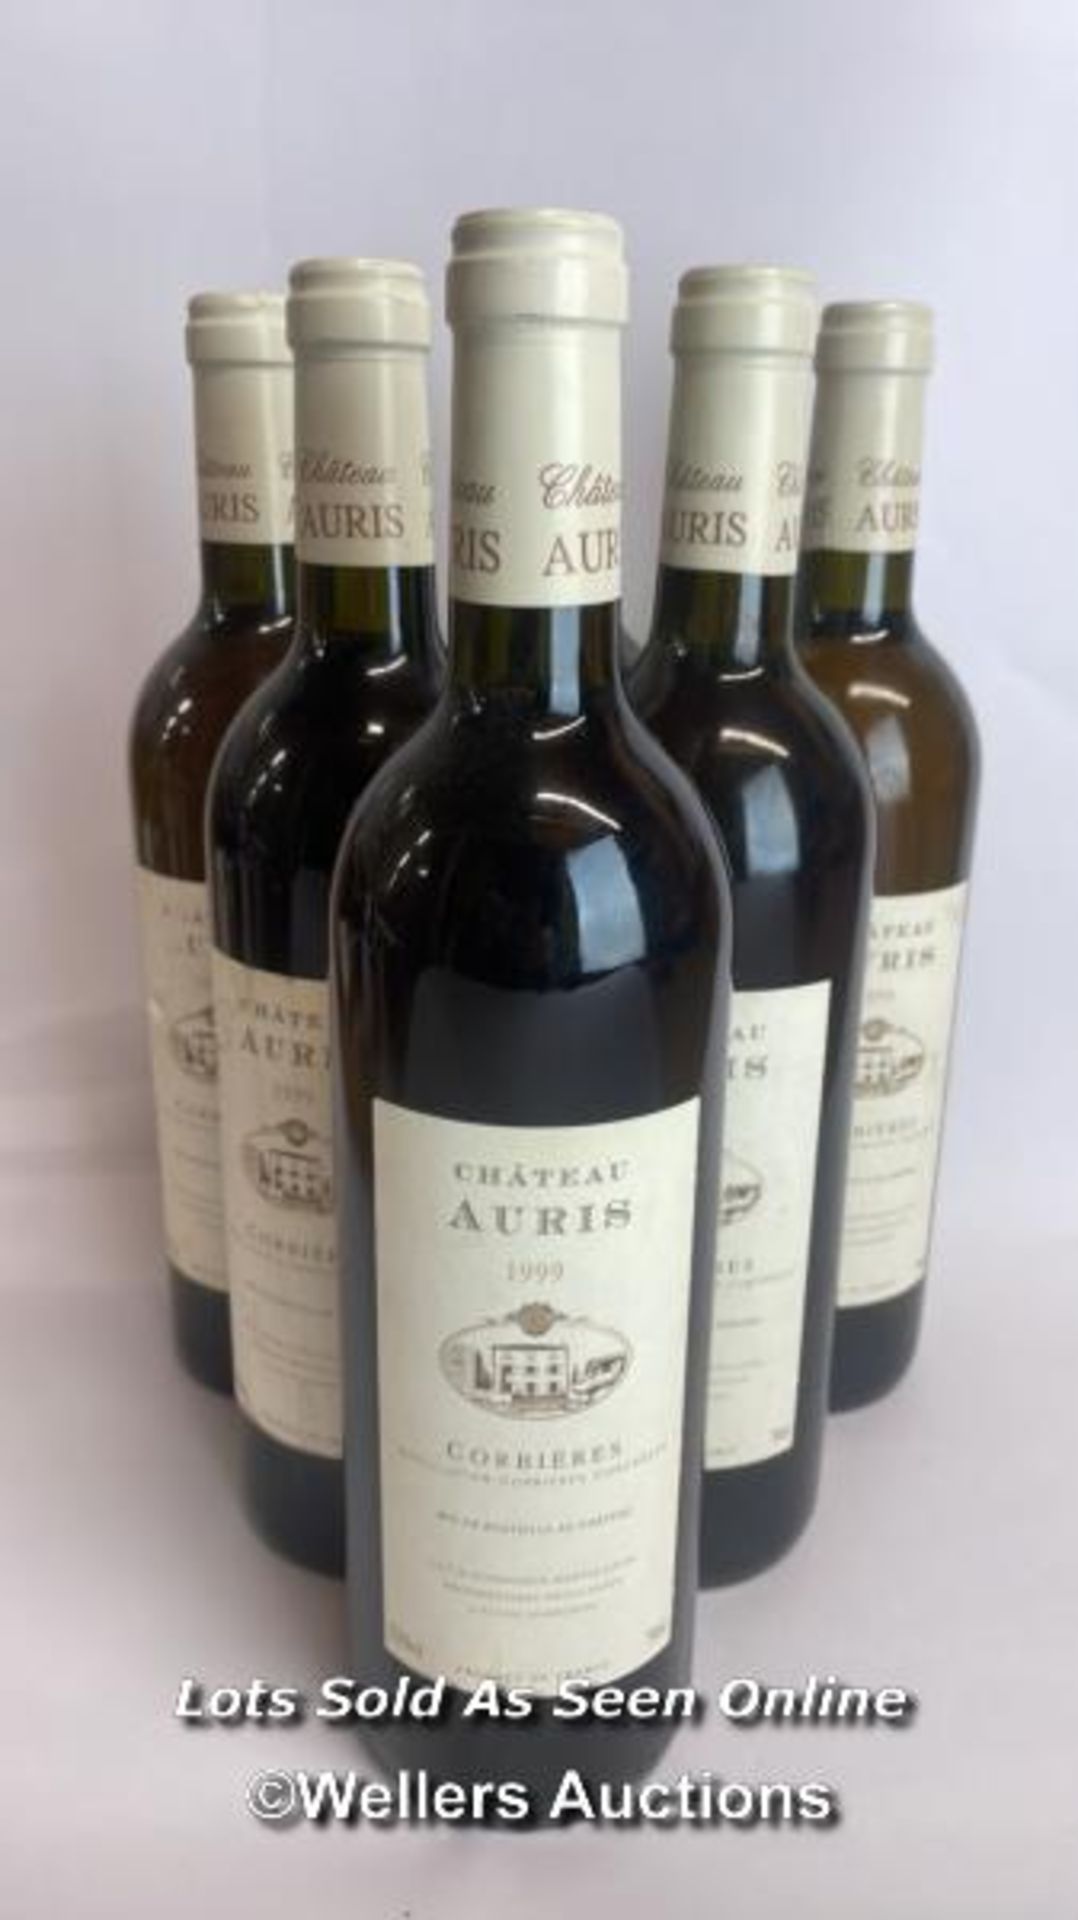 Six bottles of 1999 Chateau Auris Corbieres, Mis En Boutille Au Chateau, 75cl, 12.5% vol / Please